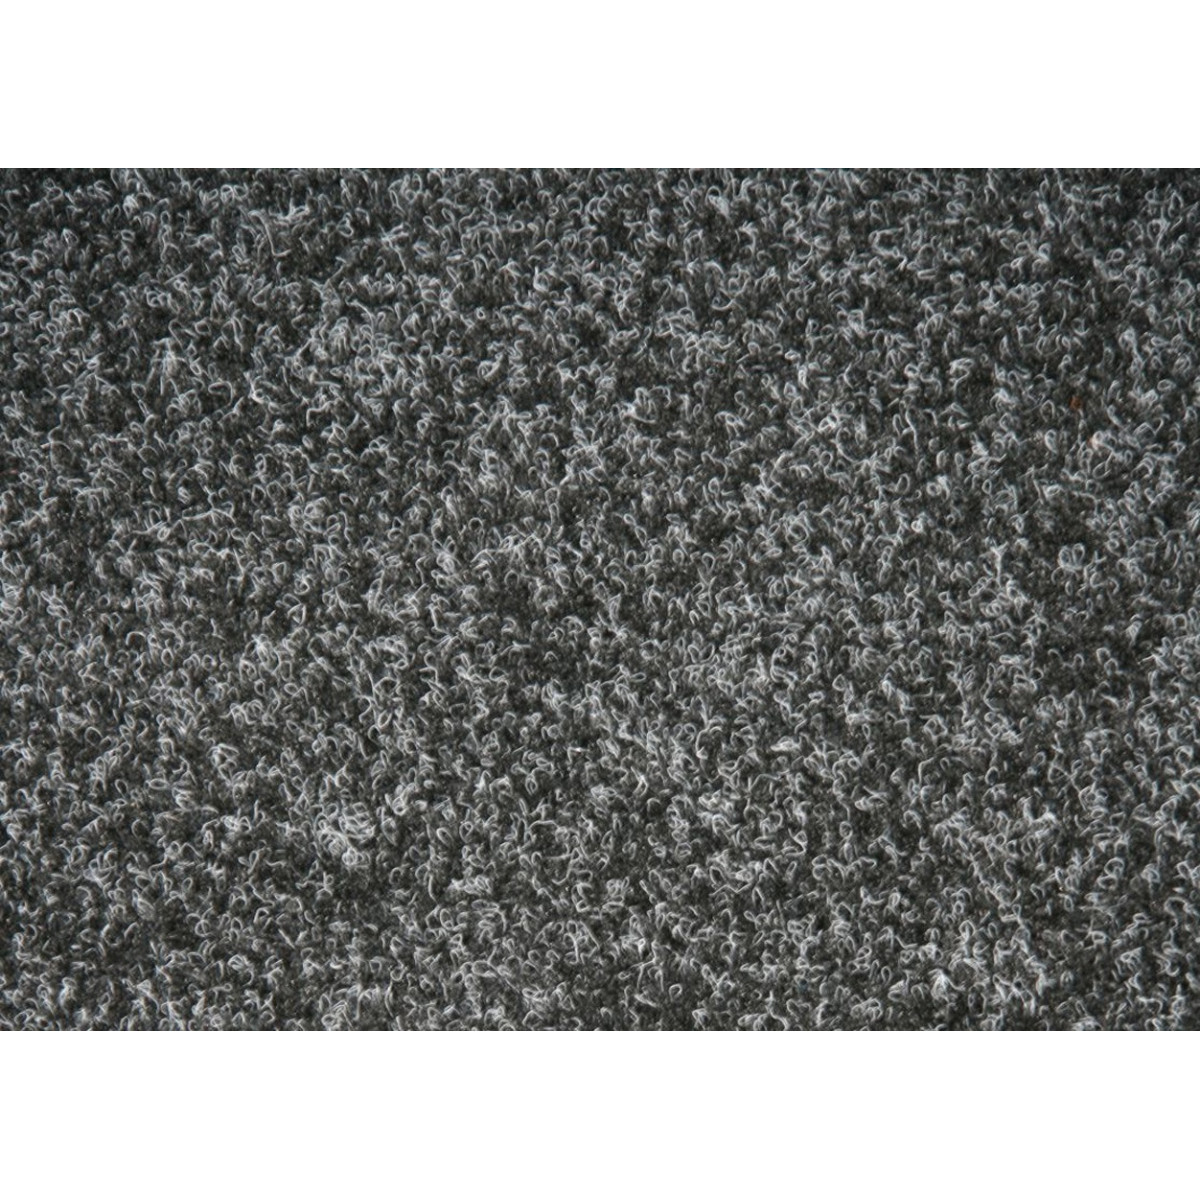 AKCE: 590x217 cm Metrážový koberec New Orleans 236 s podkladem resine, zátěžový